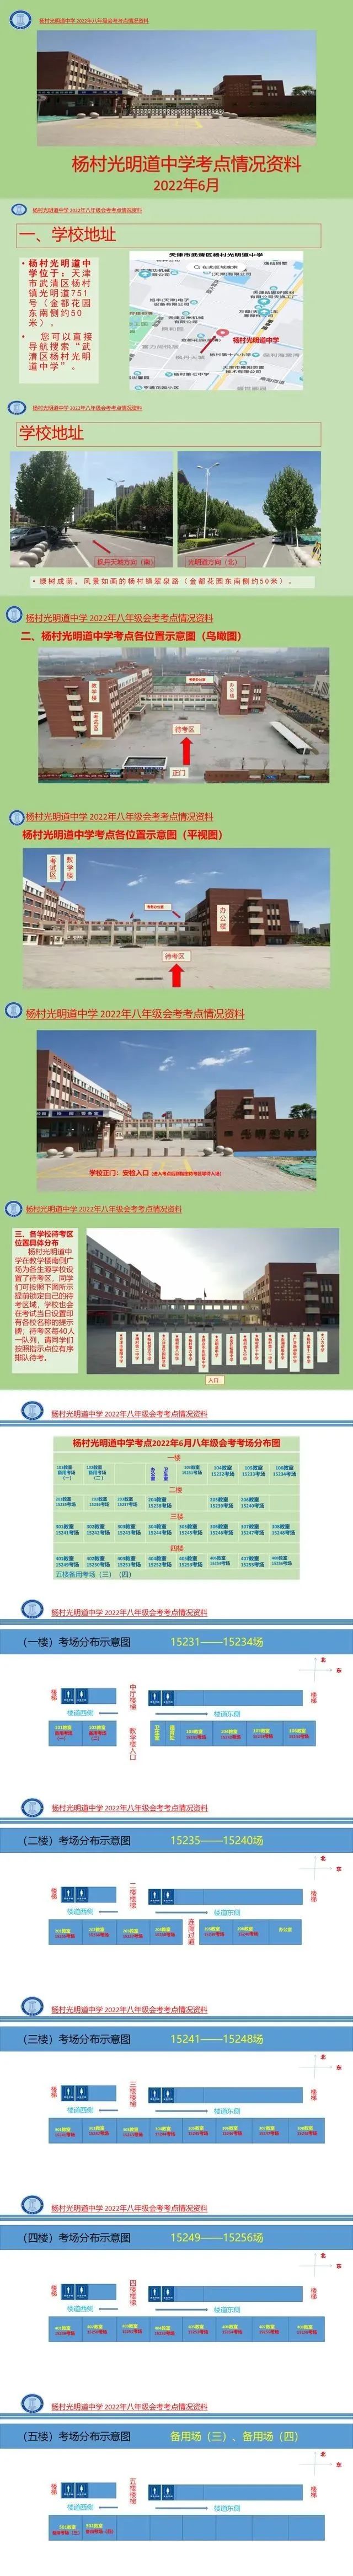 2022年天津武清区中考考点考场示意图(图35)